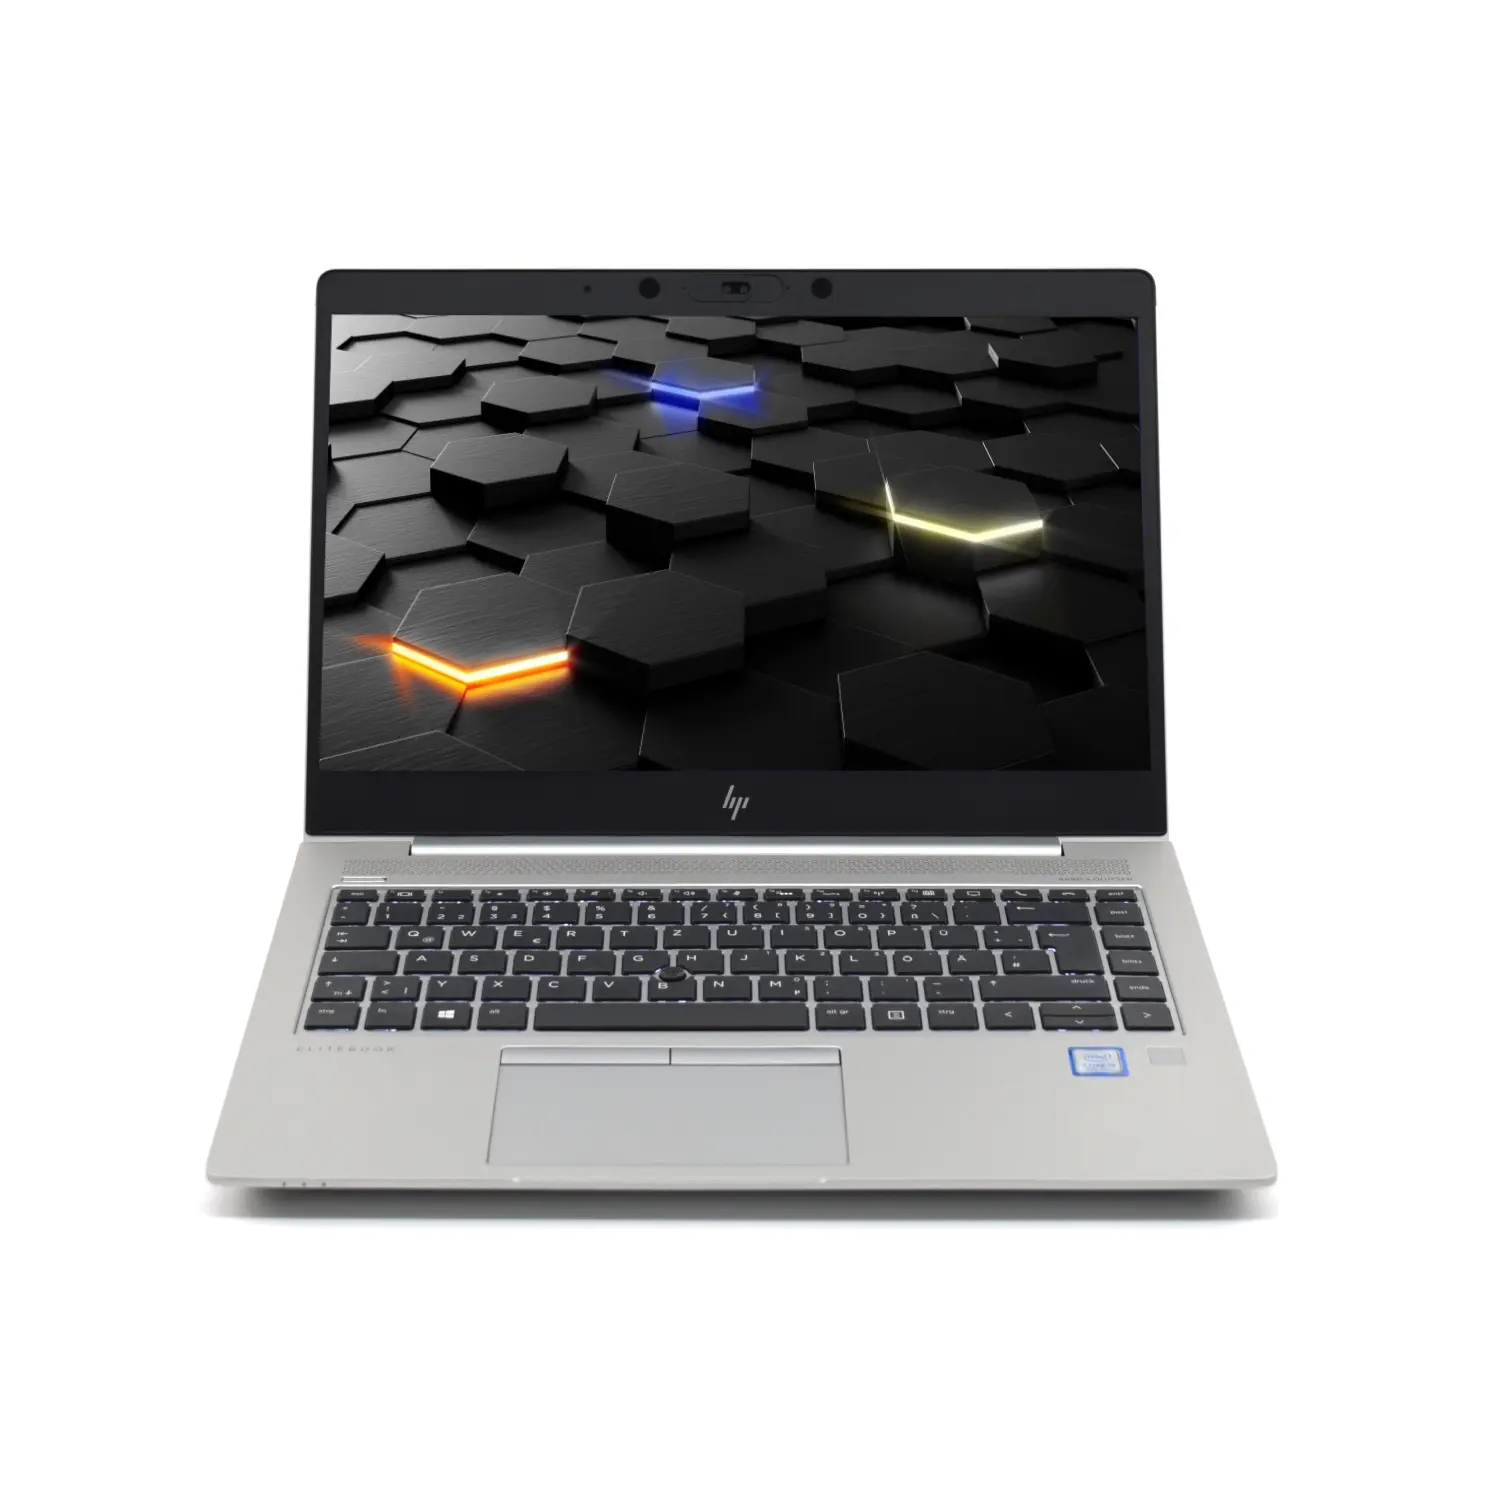 HP EliteBook 840 G5 i5 (8.Gen) FHD IPS, 8GB, 250GB NVMe,  beleuchtete Tastatur, Webcam, Windows 10 Pro